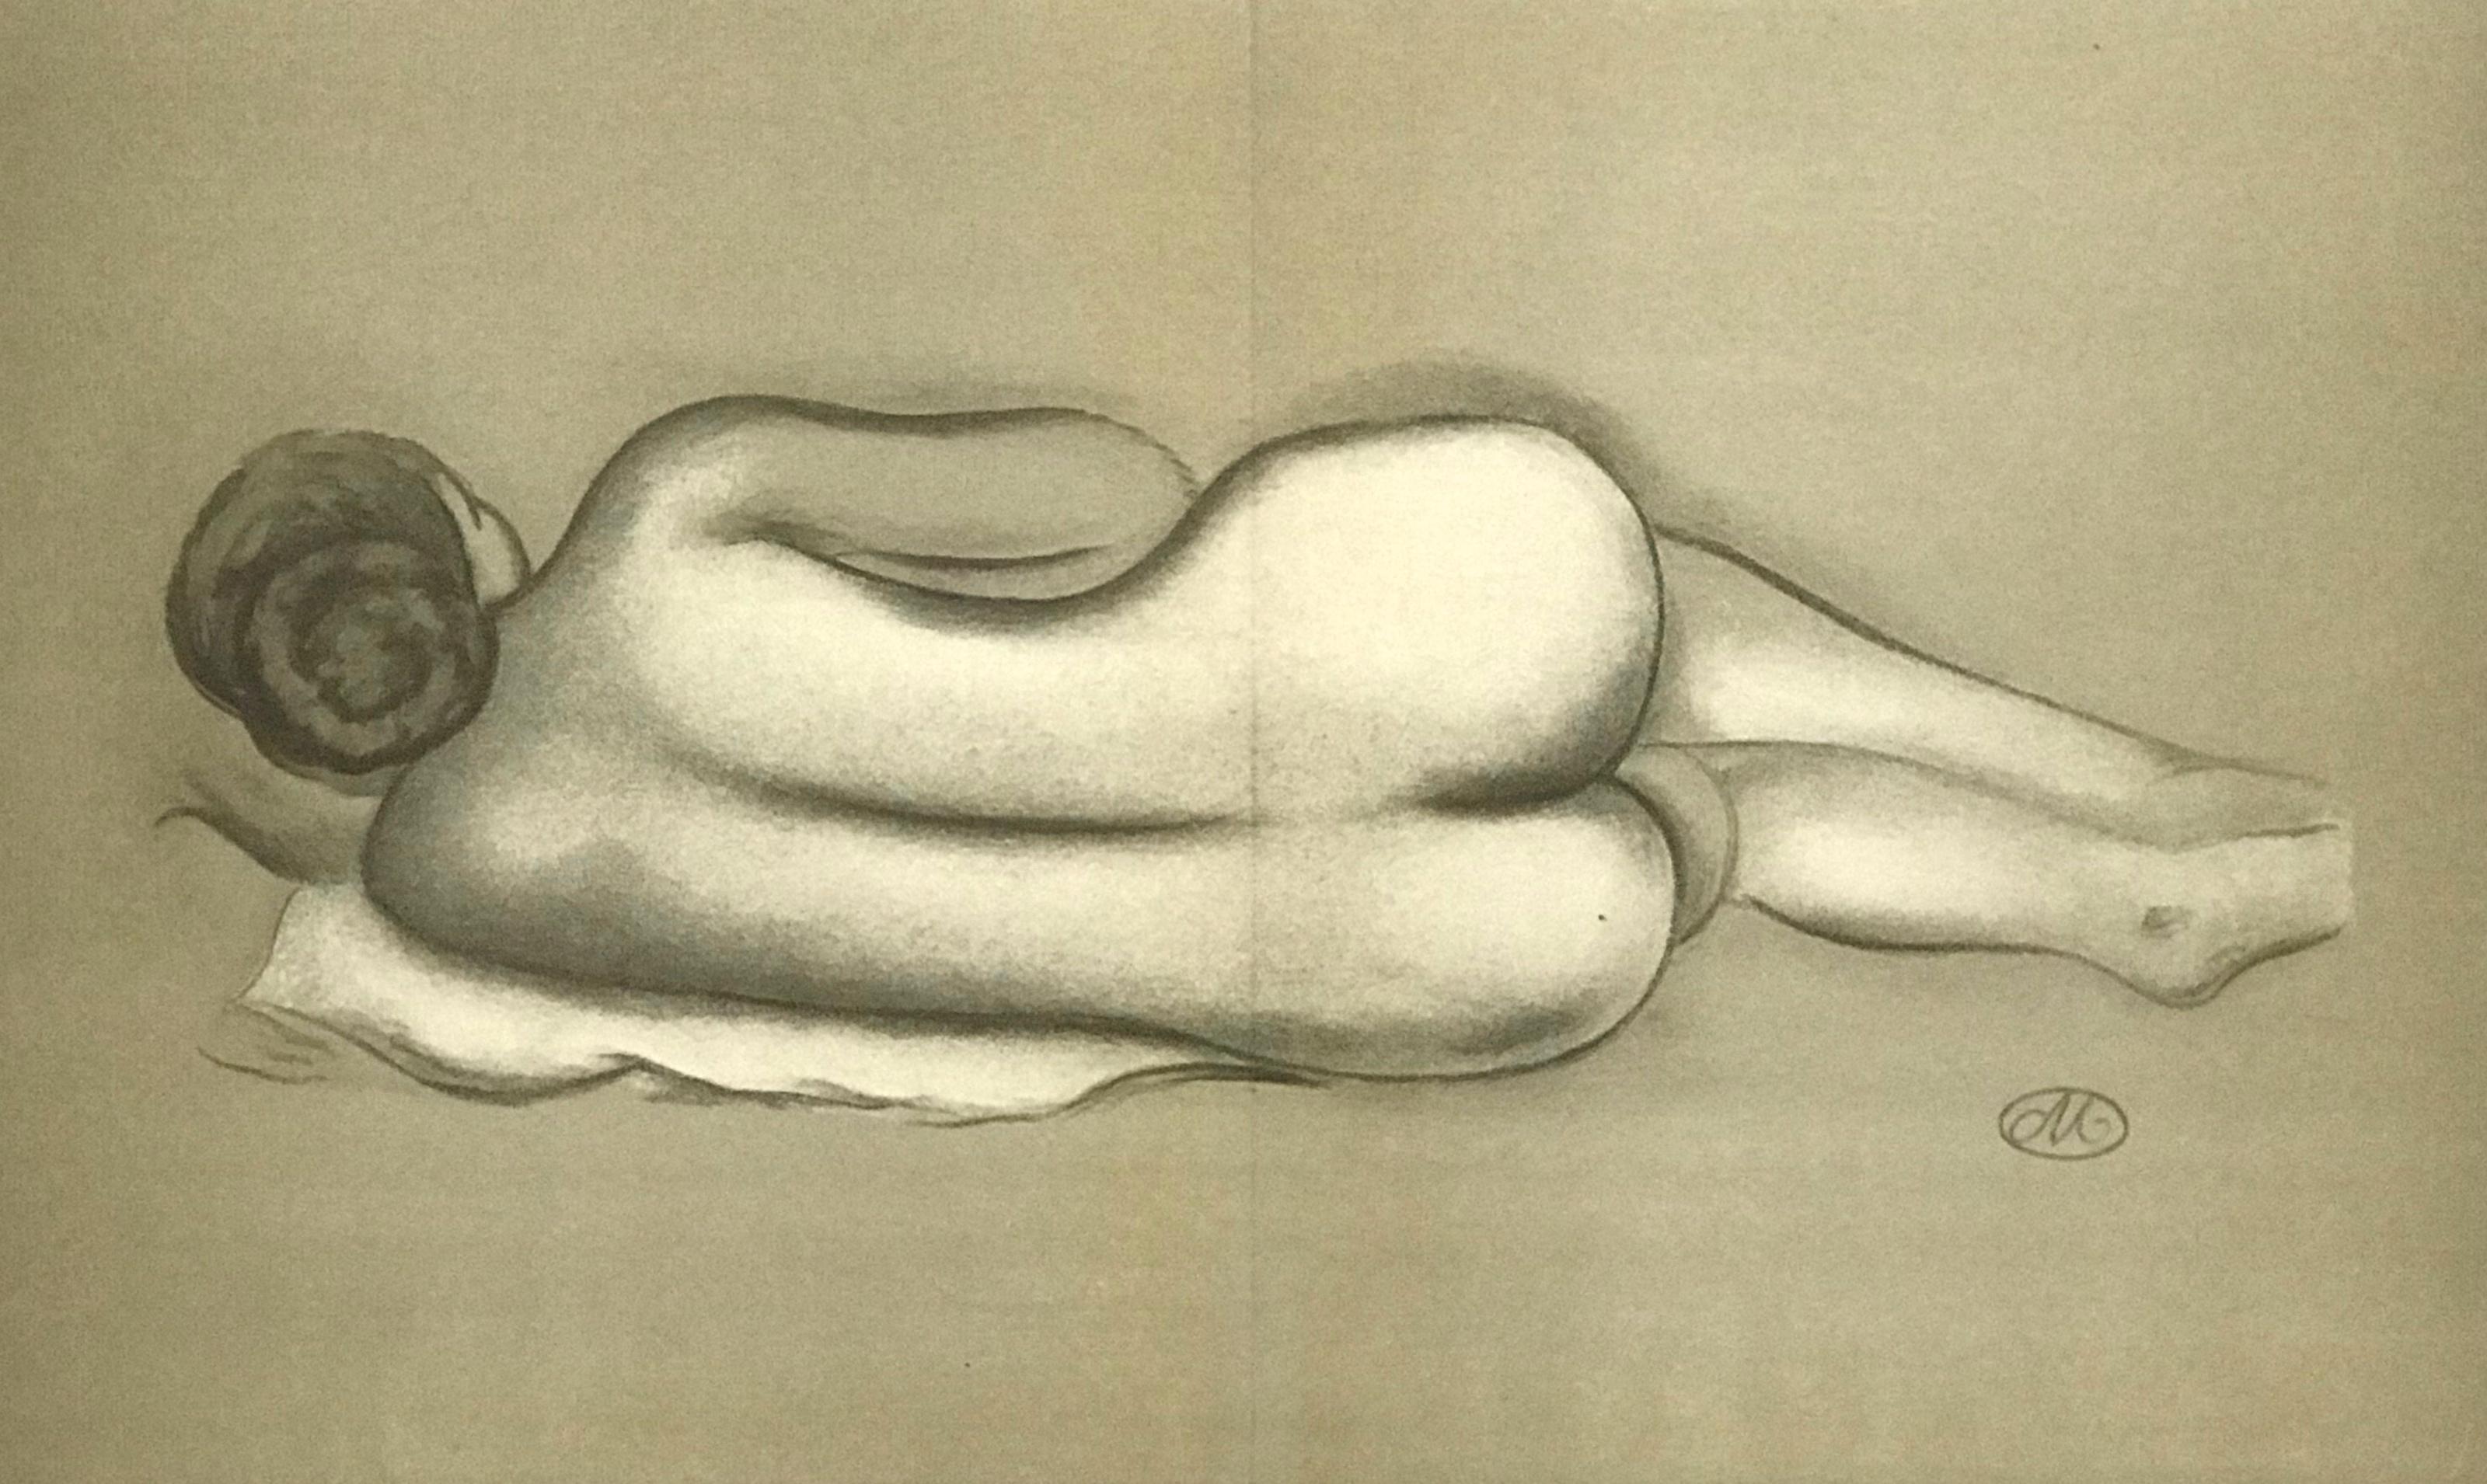 Medium: Lithographie (nach der Zeichnung). 1943 in Frankreich für die seltene Kunstrevue "Hommage" gedruckt und in einer limitierten Auflage von 1000 Exemplaren auf Montgolfier Annonay Büttenpapier veröffentlicht. Größe: 11 1/2 x 19 1/4 Zoll (300 x